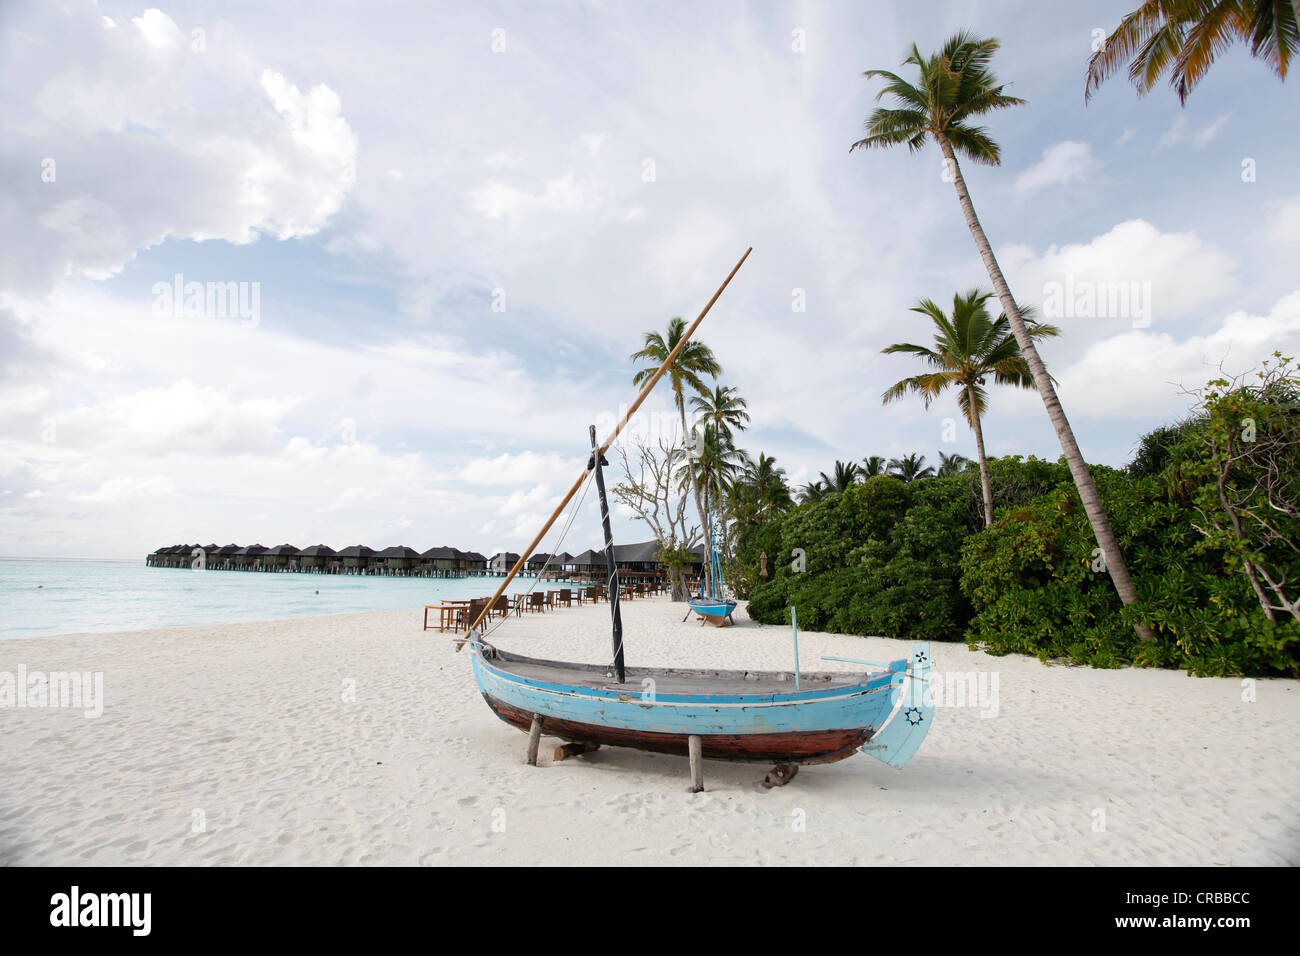 Altes Boot am Strand von Irufushi Hilton weltweit Resorts, Noonu Atoll, Malediven, Indischer Ozean Stockfoto